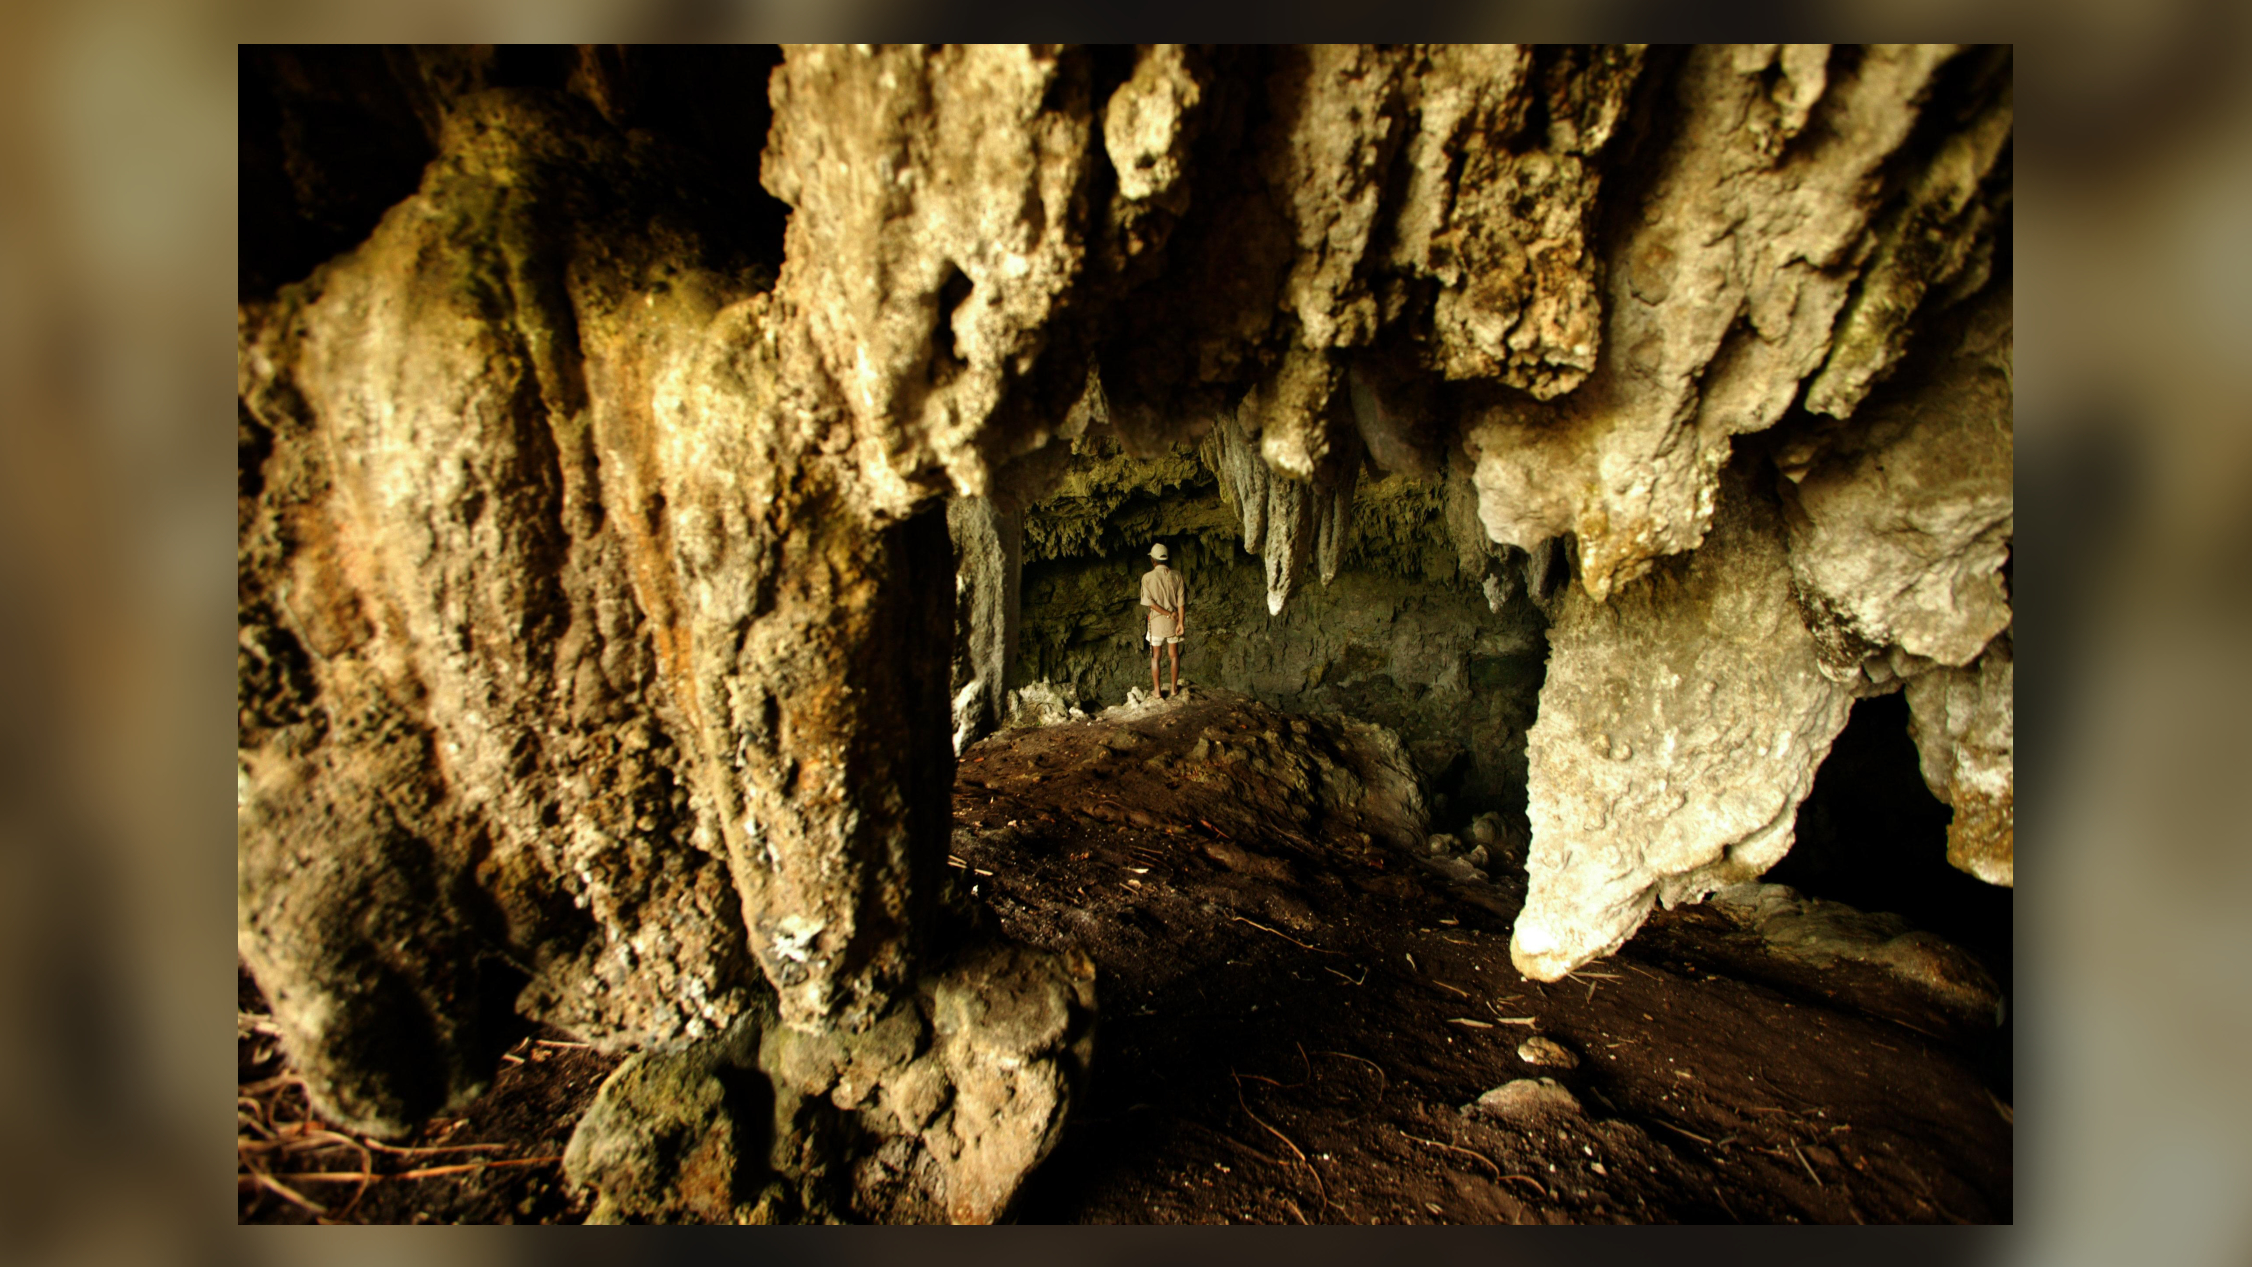 Salah satu gua tempat ditemukannya tulang spesies Homo floresiensis